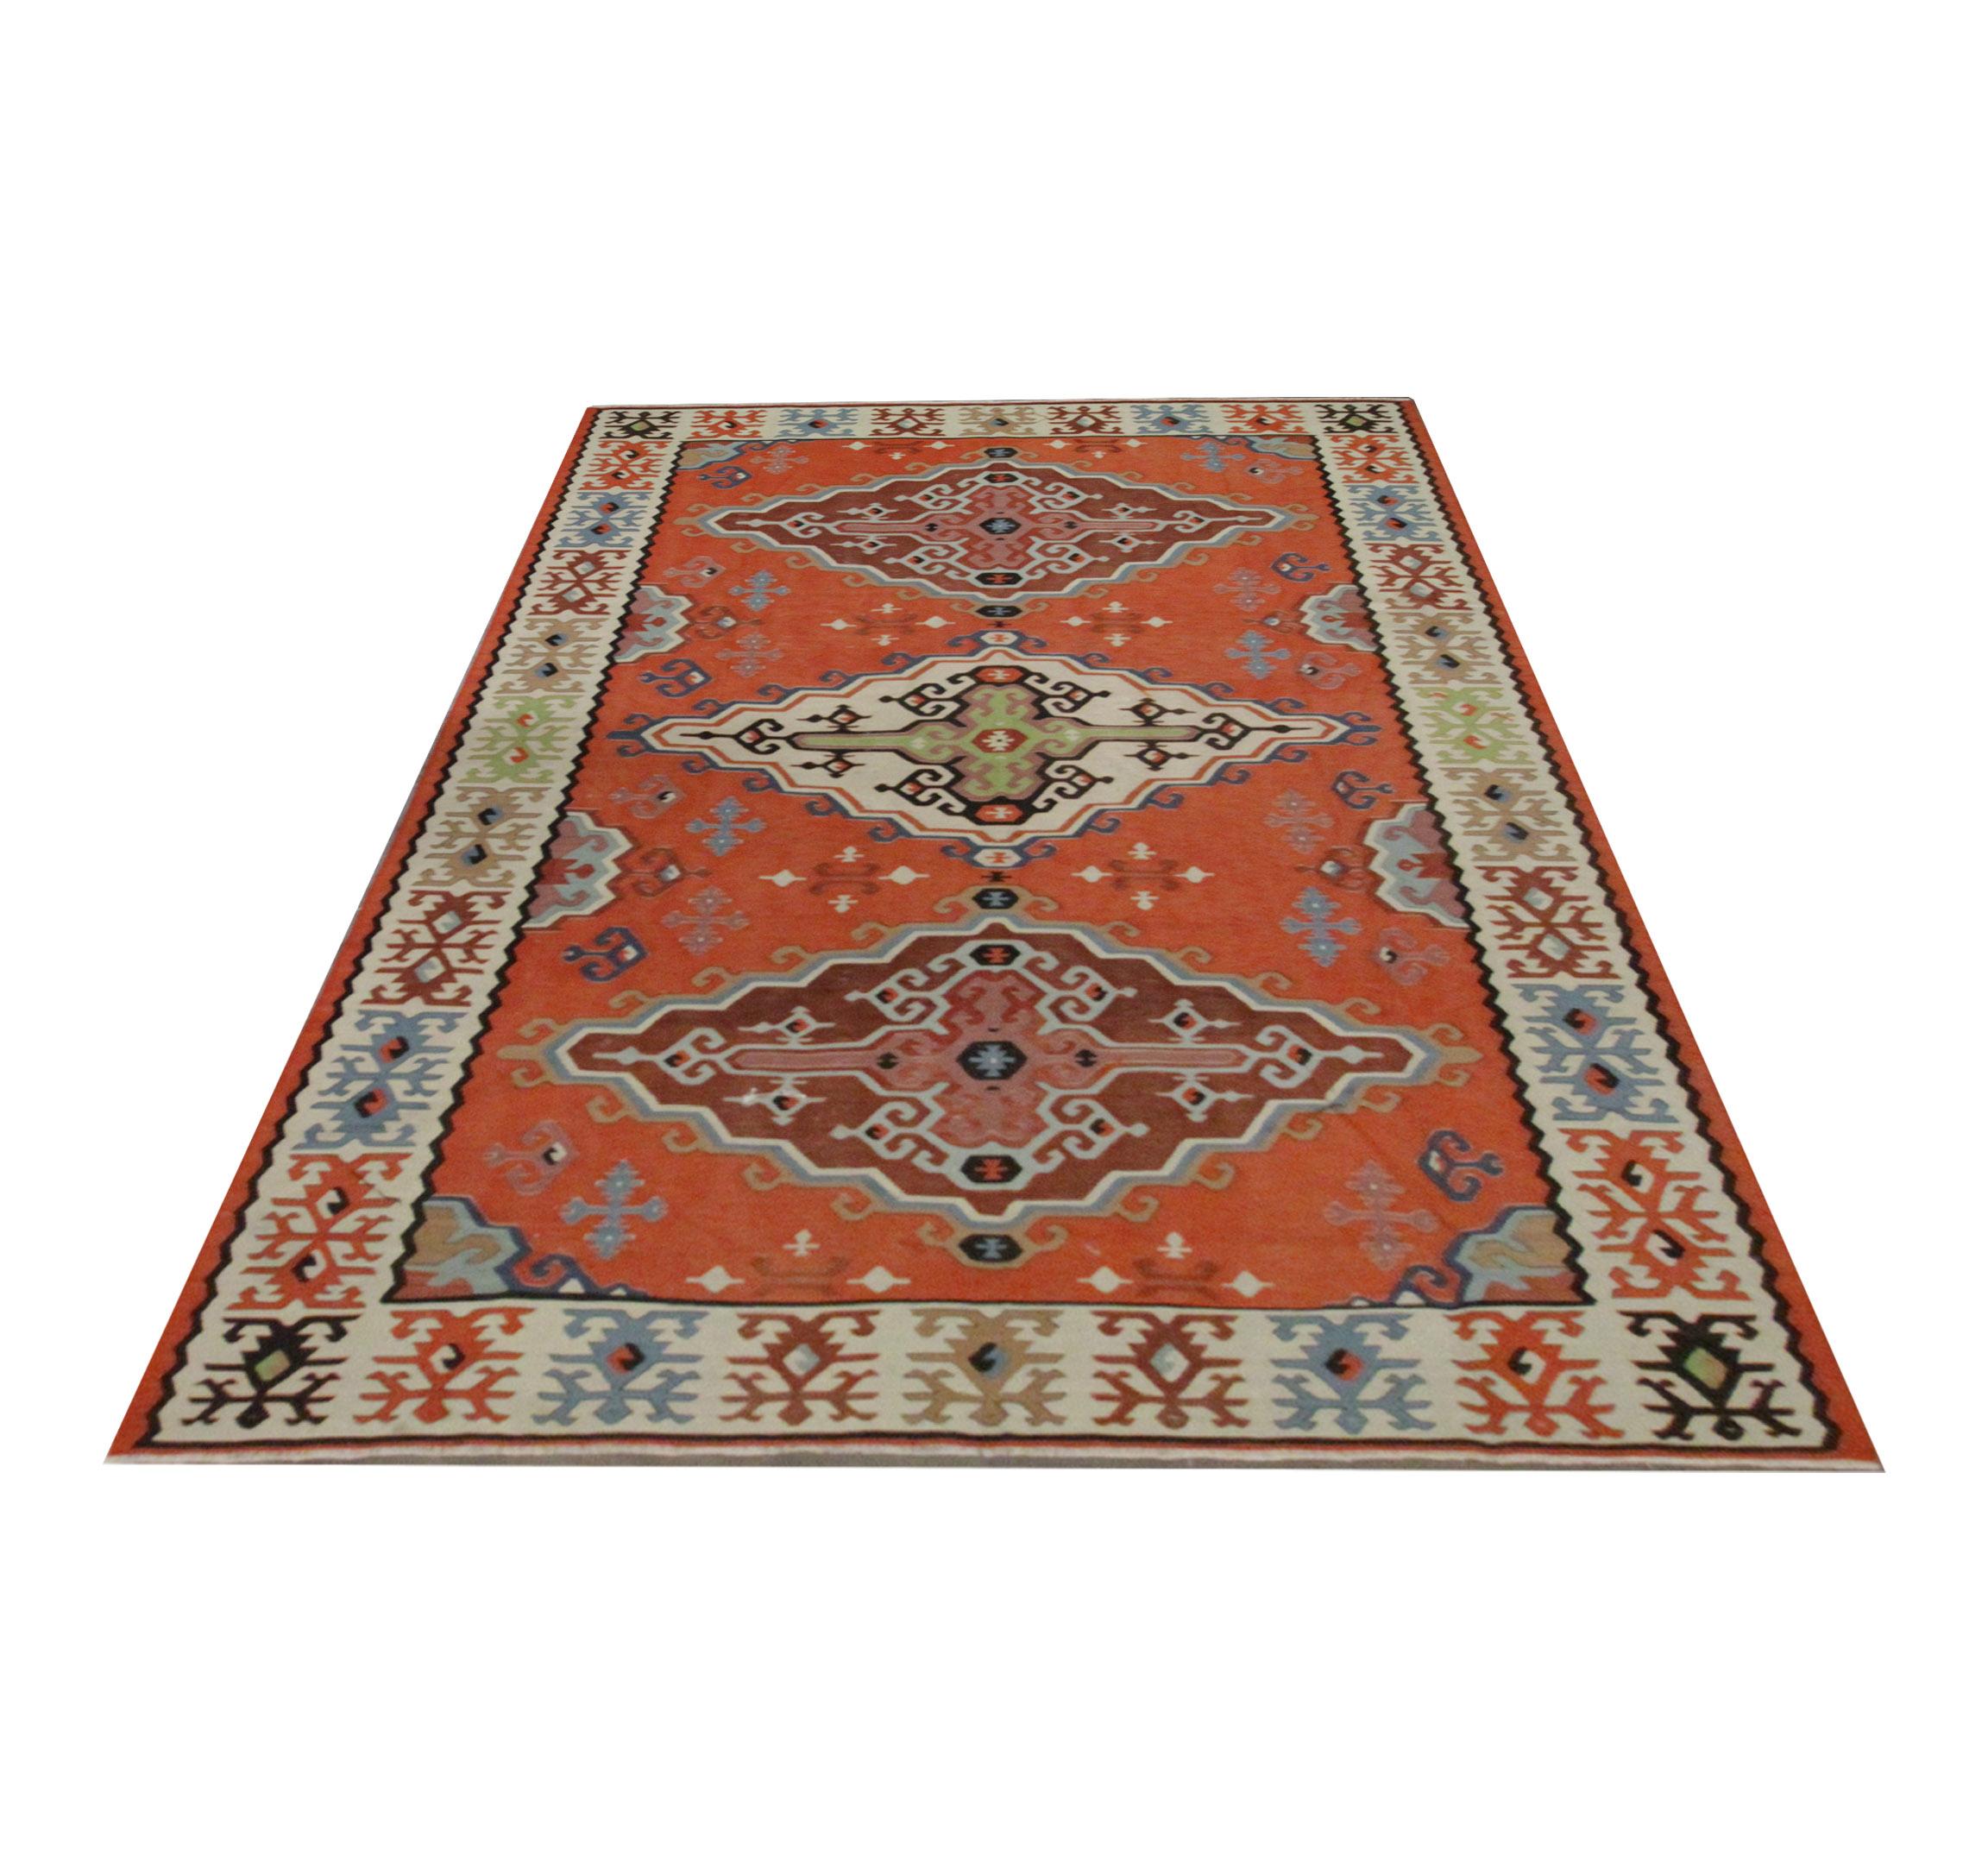 Dieser schöne handgefertigte Kelim ist ein serbischer Pirot-Teppich, der in den 1930er Jahren gewebt wurde. Das Design zeigt einen satten rostfarbenen Hintergrund mit einem Trio von Medaillons in Creme, Braun und Rosa als Akzente. Dieses wird von